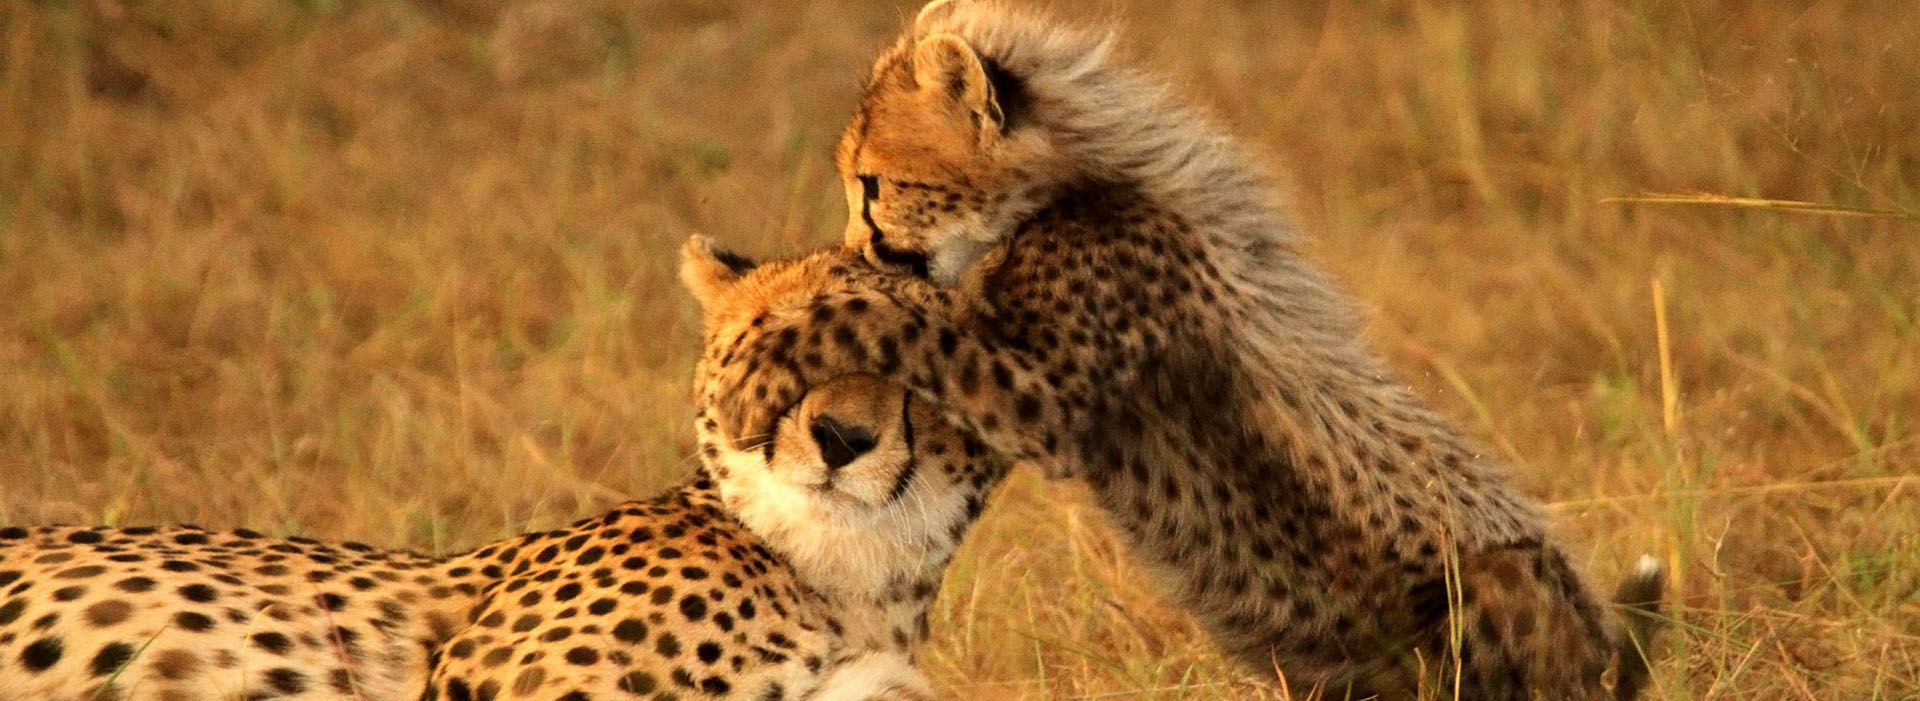 Movie poster Cheetah. Hunter becomes prey